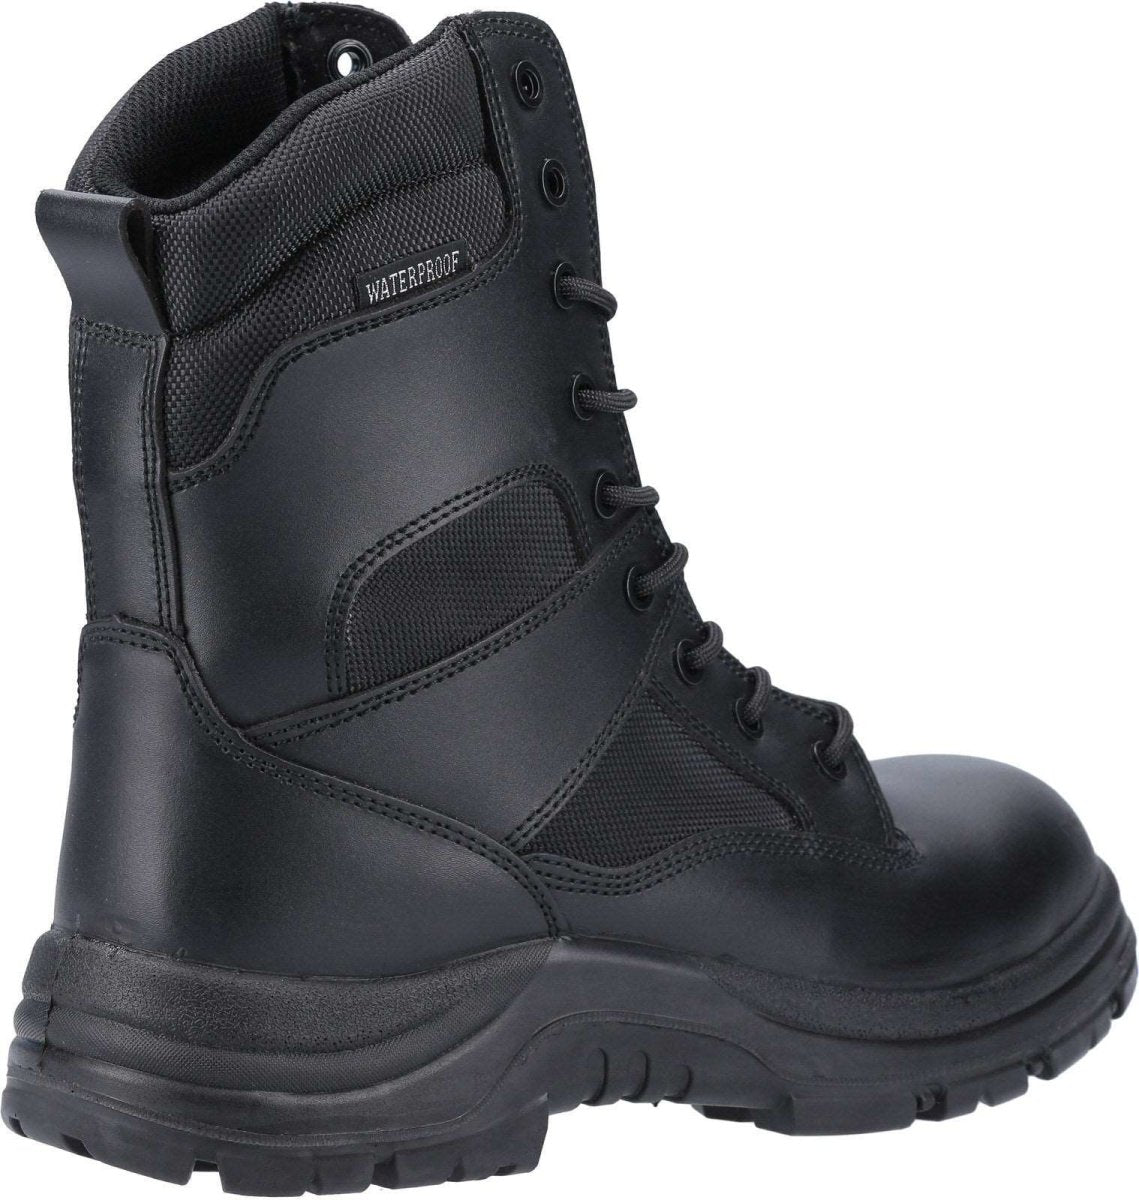 Amblers Combat Hi-Leg Mens Boots - Shoe Store Direct